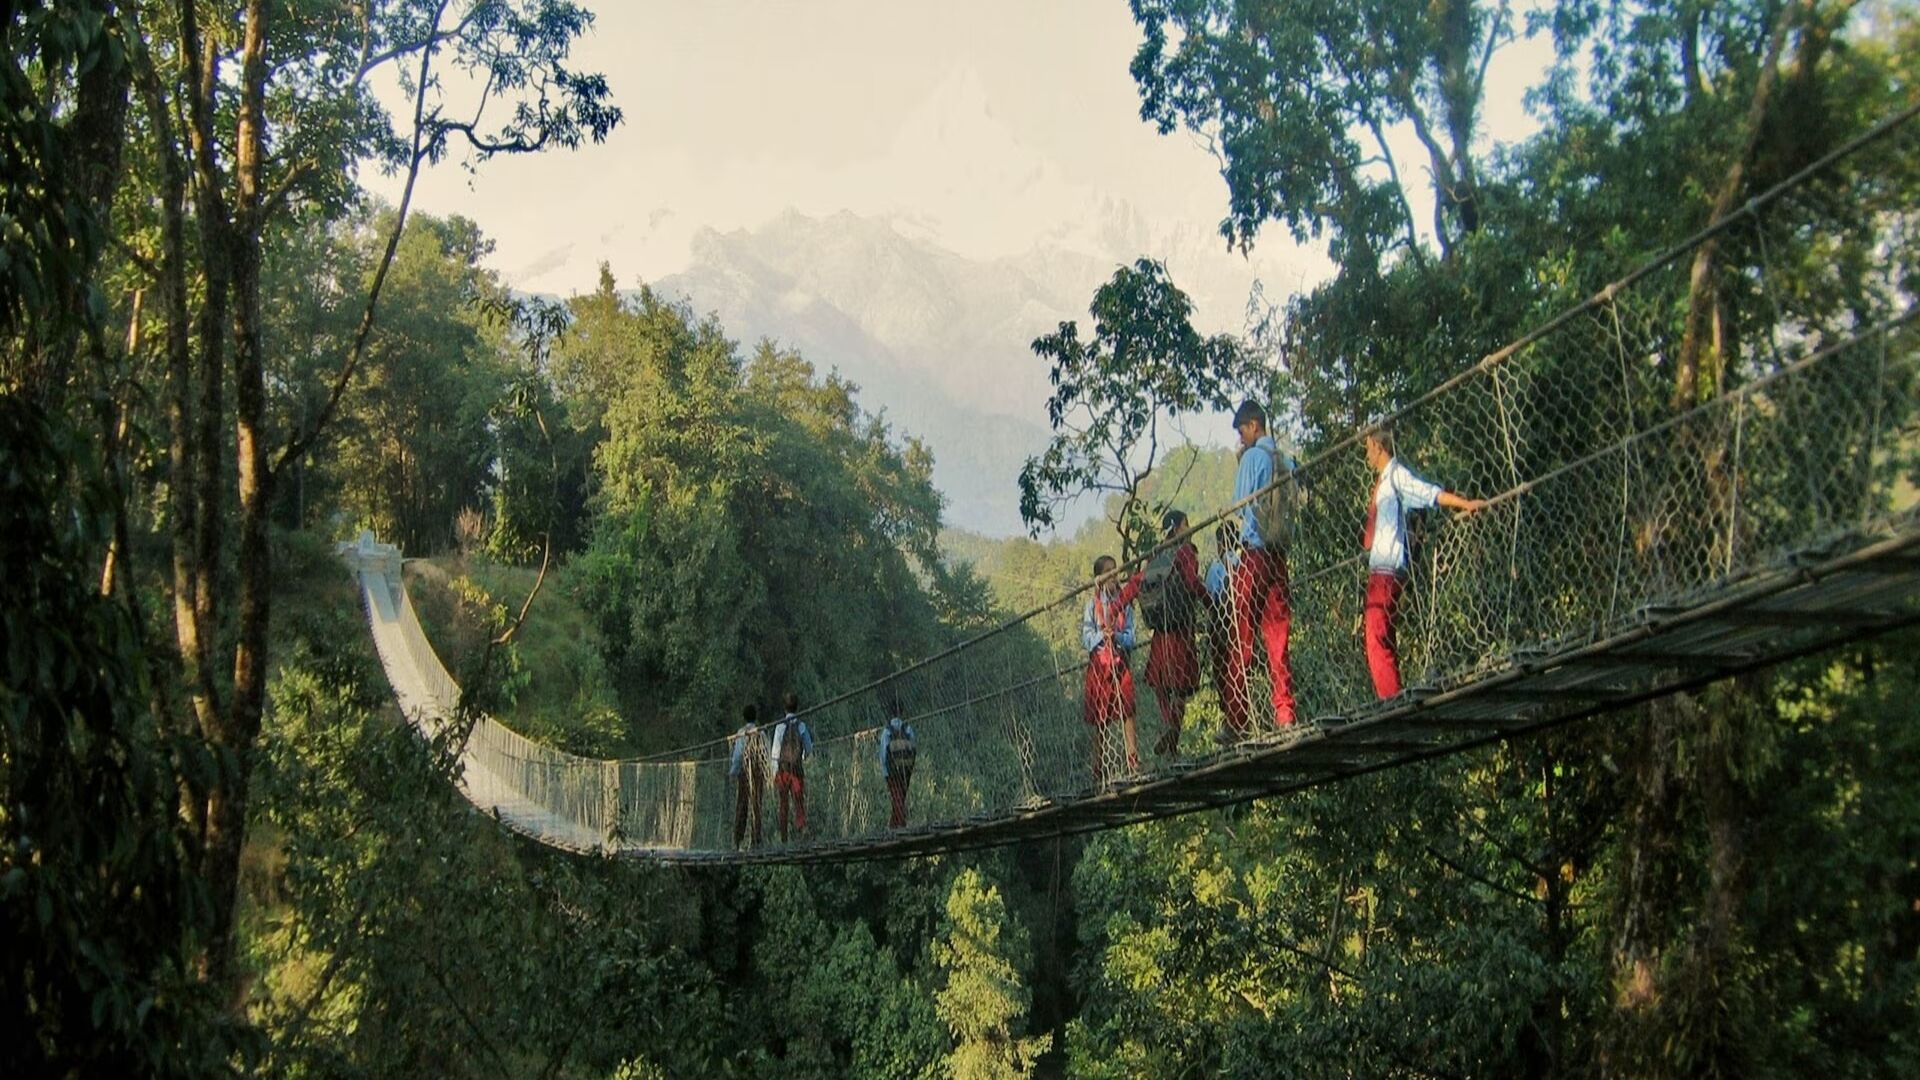 Падвесныя масты: за 63 гады ў Непале спраектавалі і пабудавалі 10 тысяч падвесных праездаў дзякуючы супрацоўніцтву Швейцарыі